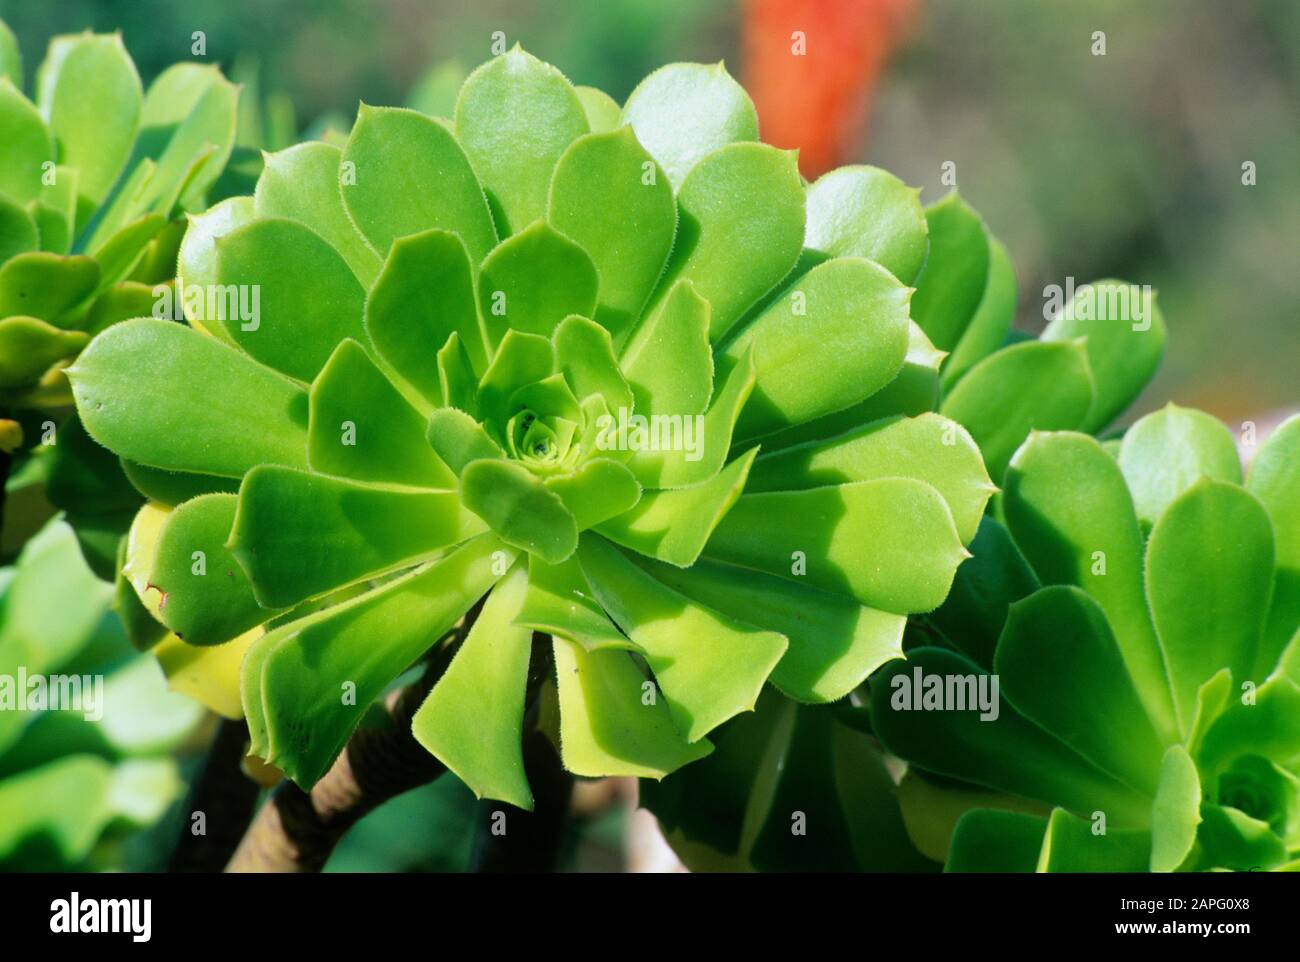 Aeonium en arbre (Aeonium arboreum syn. Sempervivum arboreum) Stock Photo